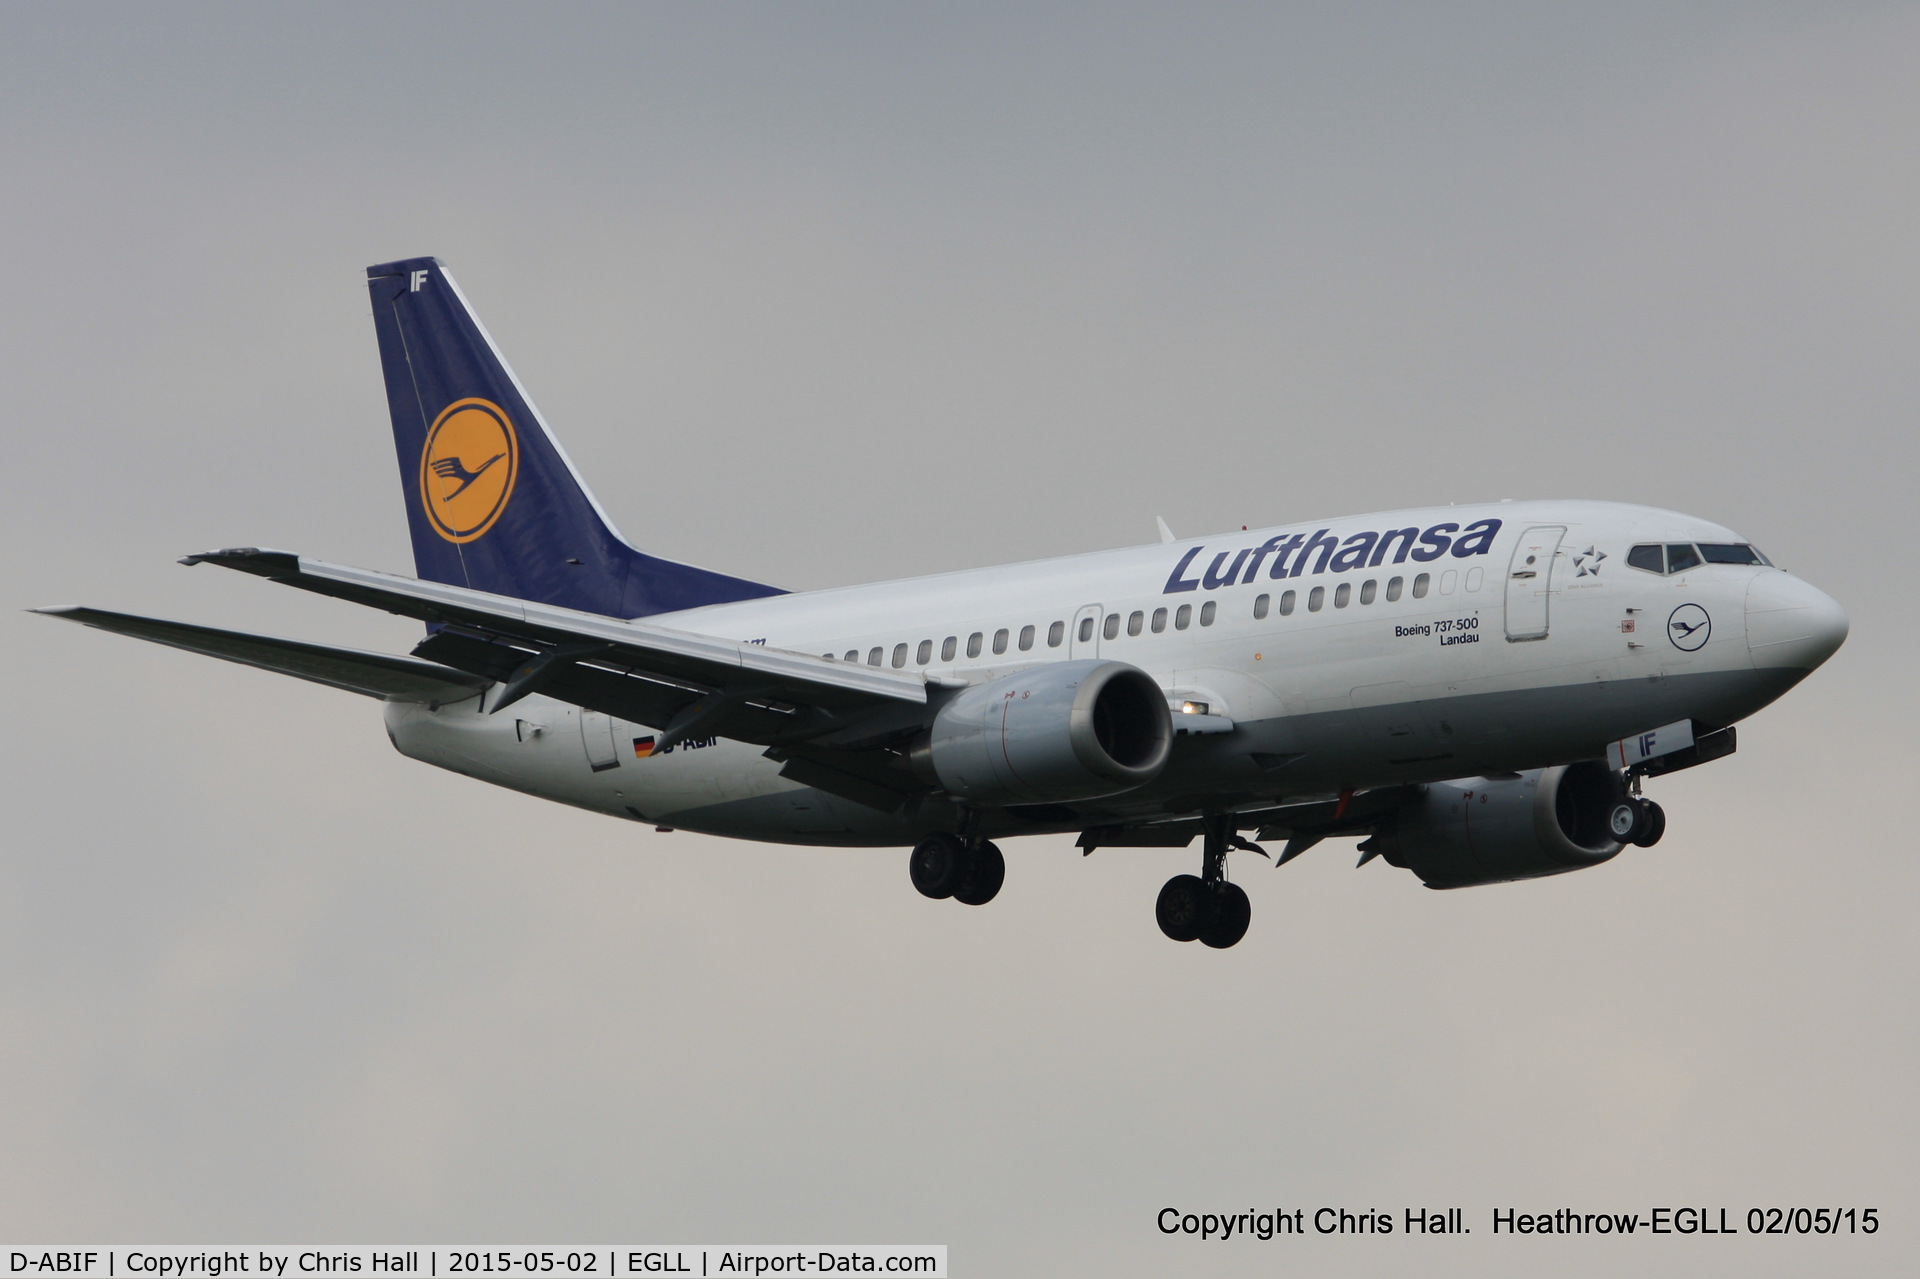 D-ABIF, 1991 Boeing 737-530 C/N 24820, Lufthansa